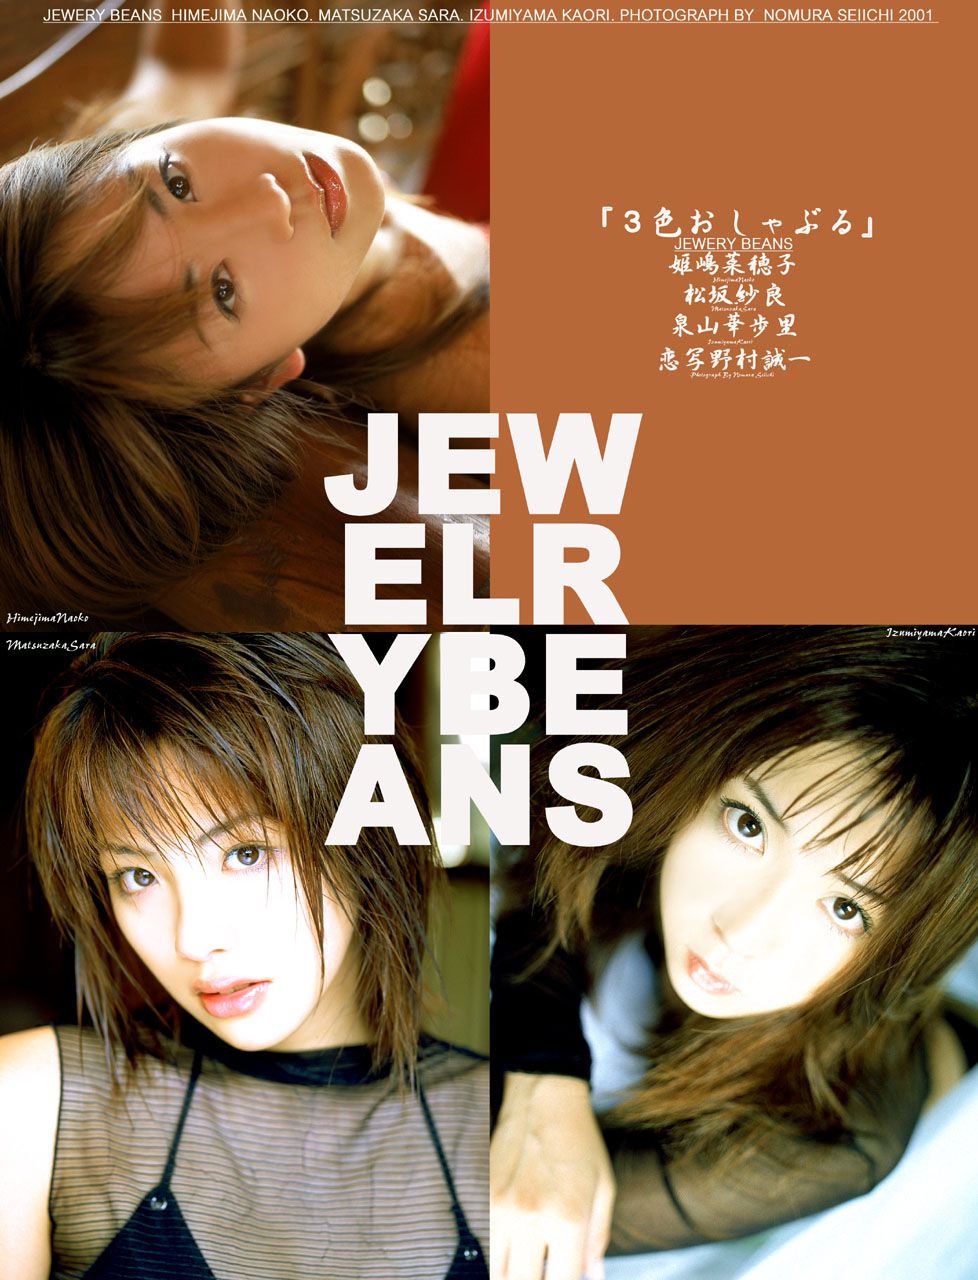 [NS Eyes] SF-No.115 Naoko Himejima 姫嶋菜穂子 Jewelry Beans 